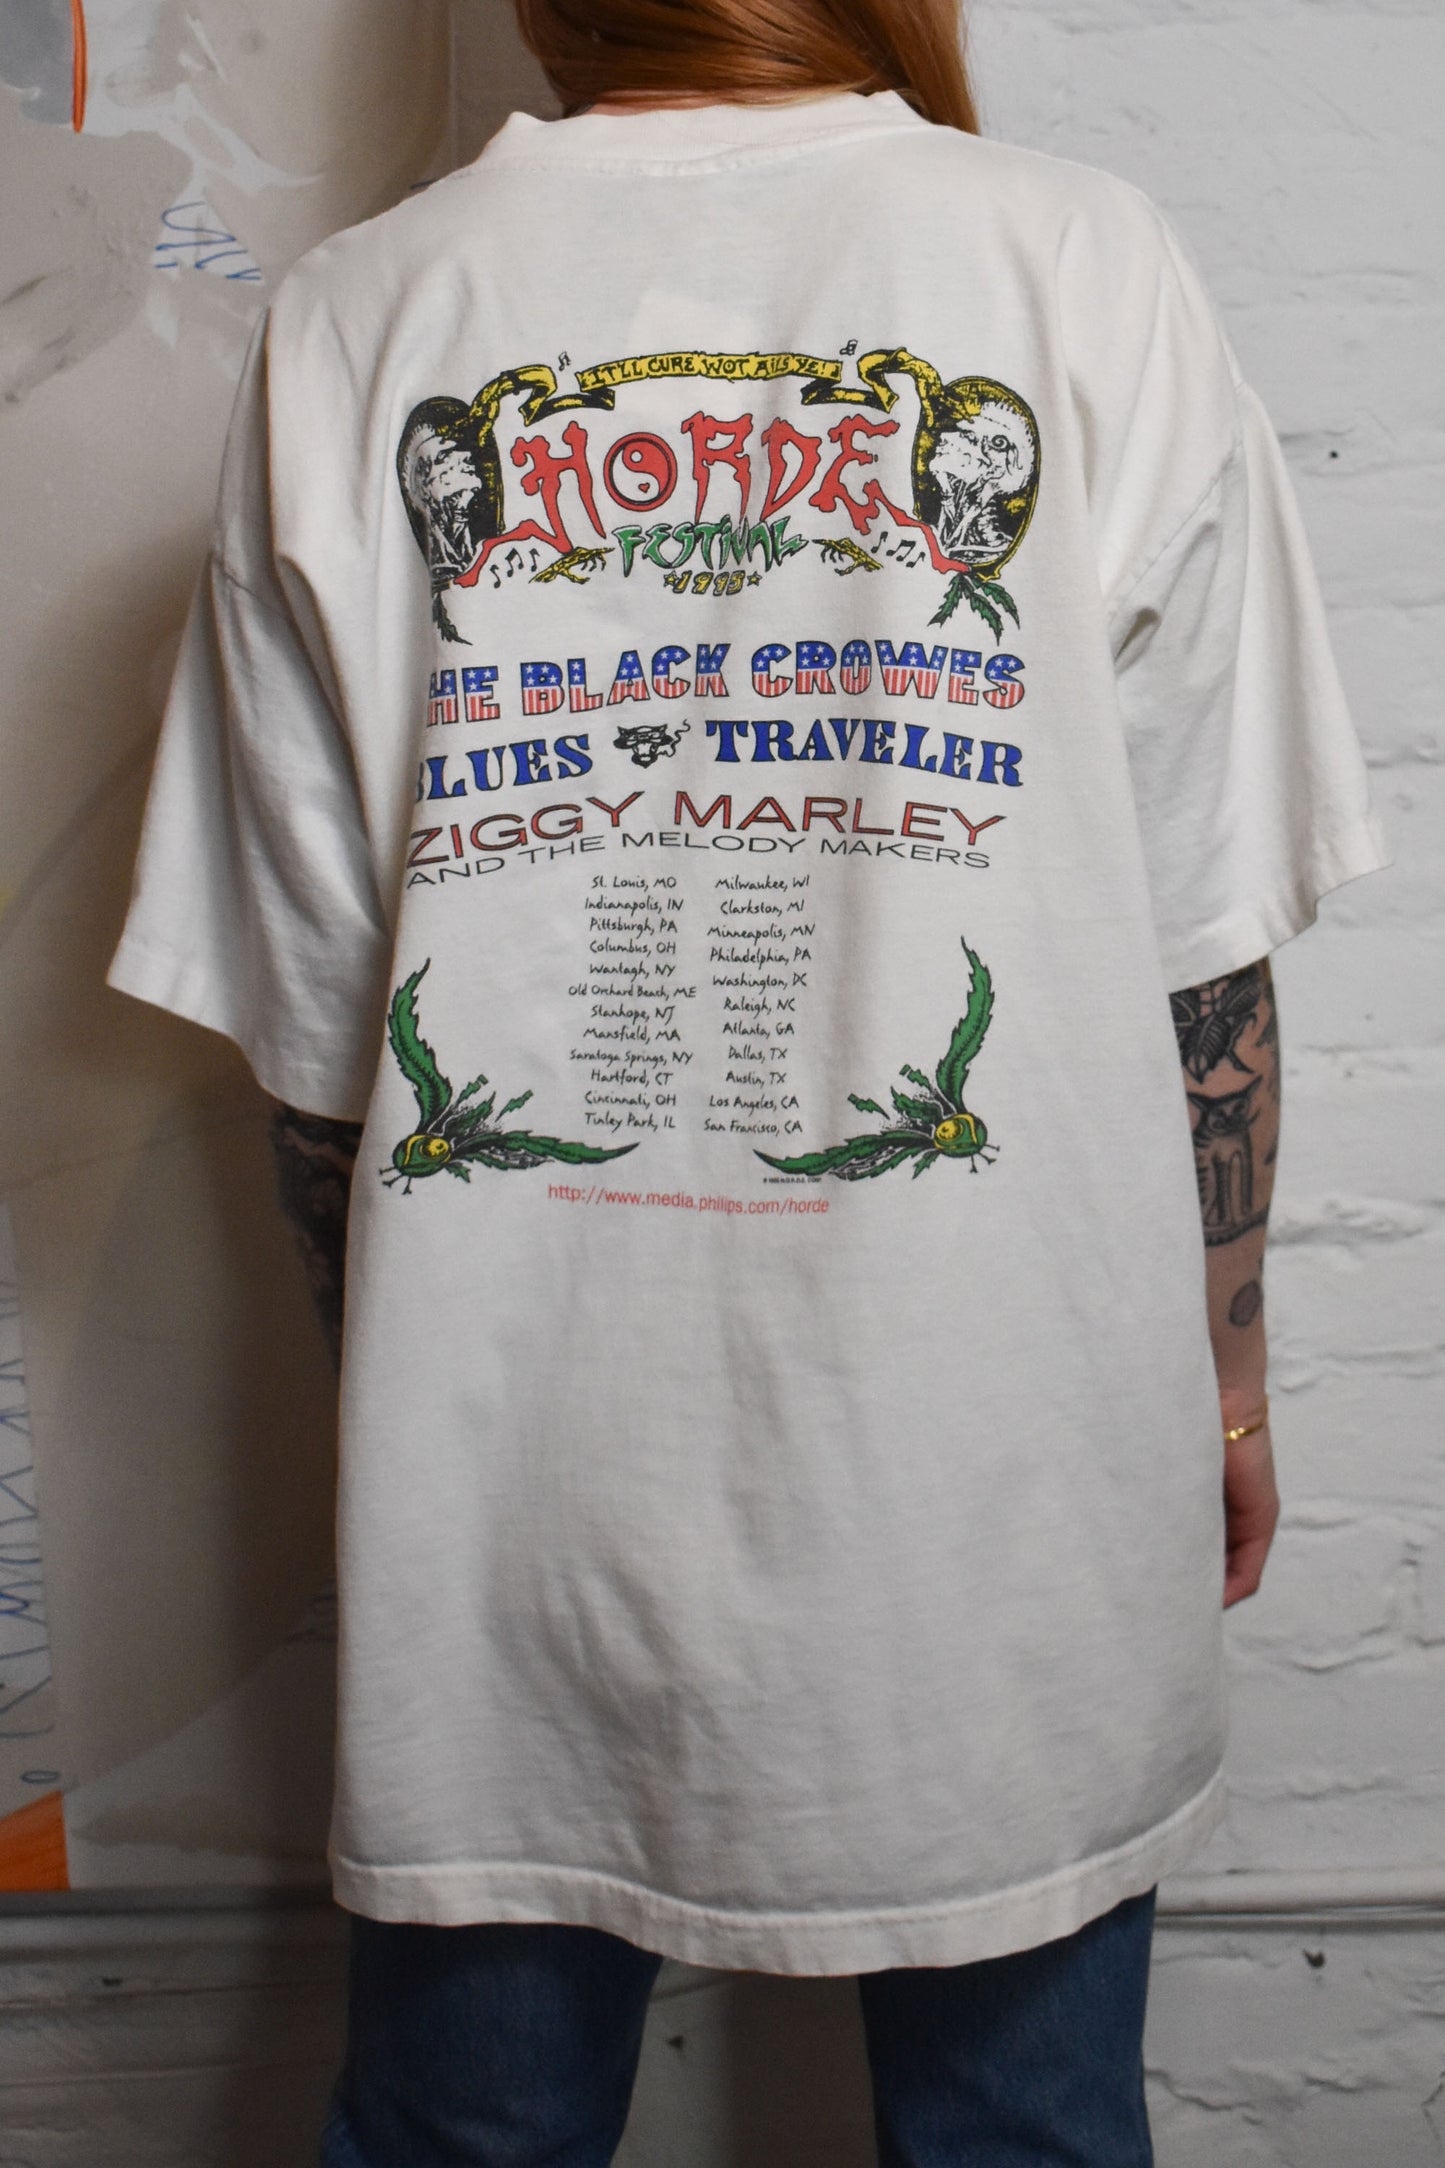 Vintage 1995 "The Shock Of Horde Festival" T-shirt